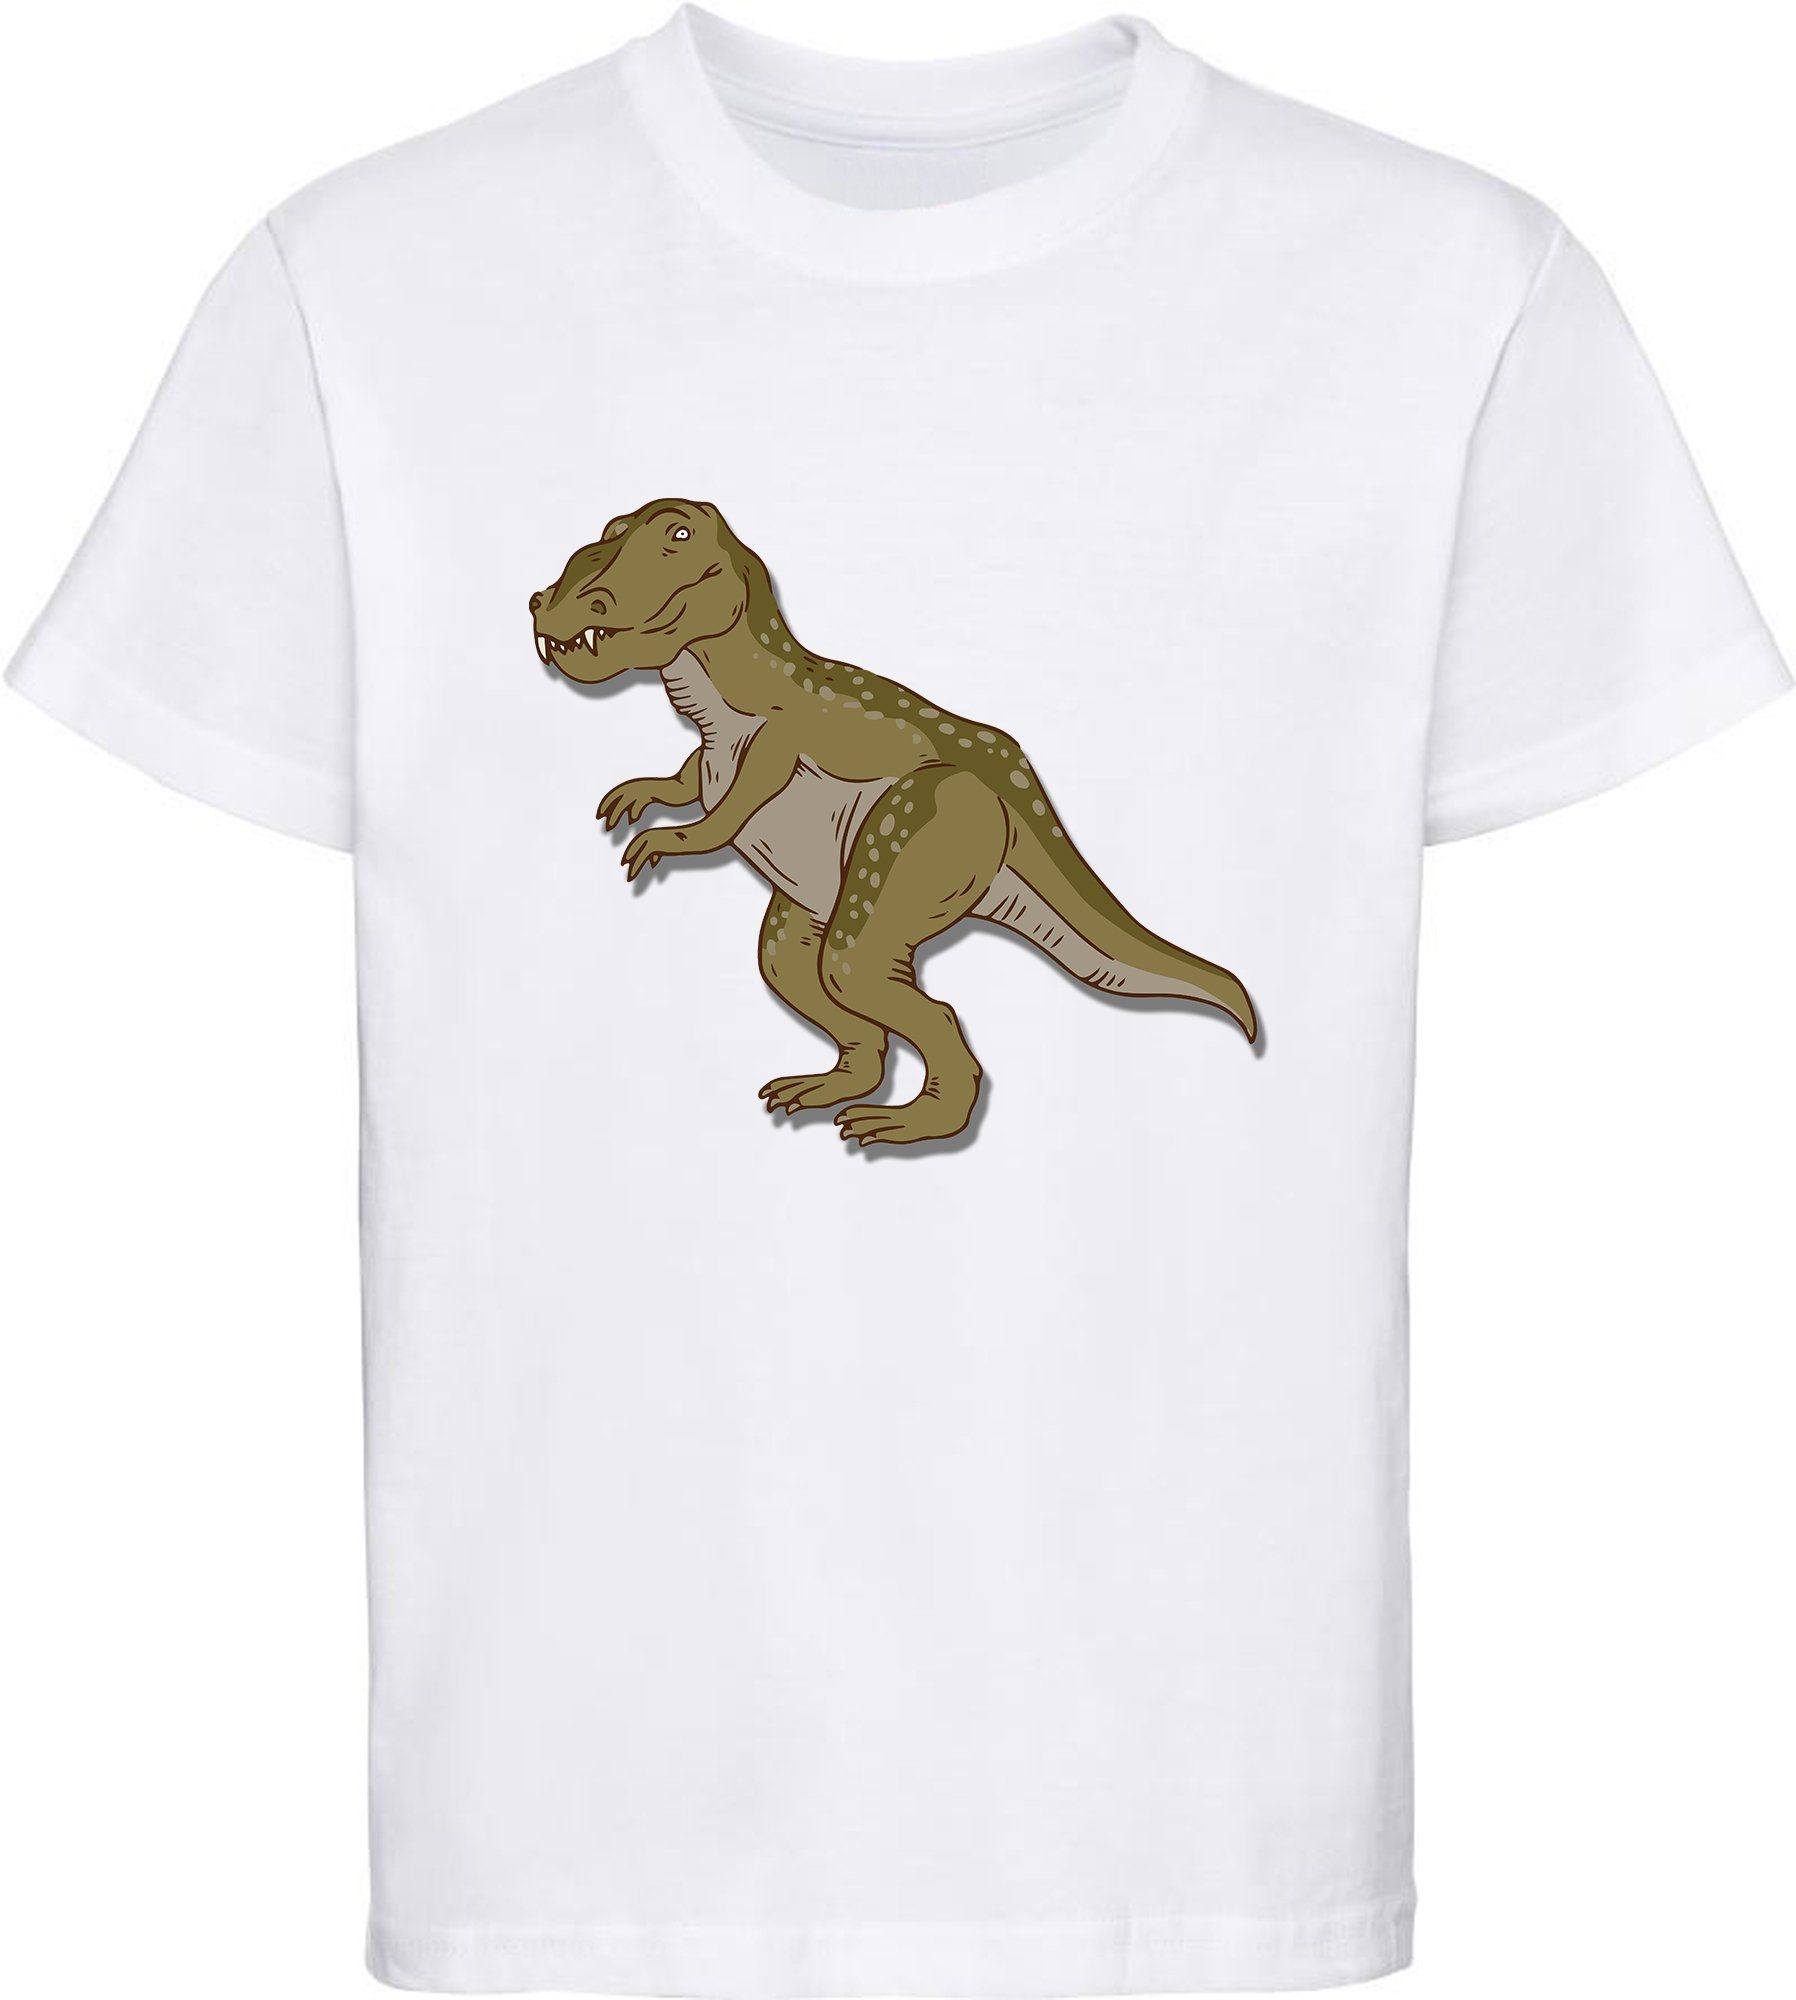 MyDesign24 Print-Shirt bedrucktes Kinder T-Shirt mit Tyrannosaurus Rex Baumwollshirt mit Dino, schwarz, weiß, rot, blau, i69 weiss